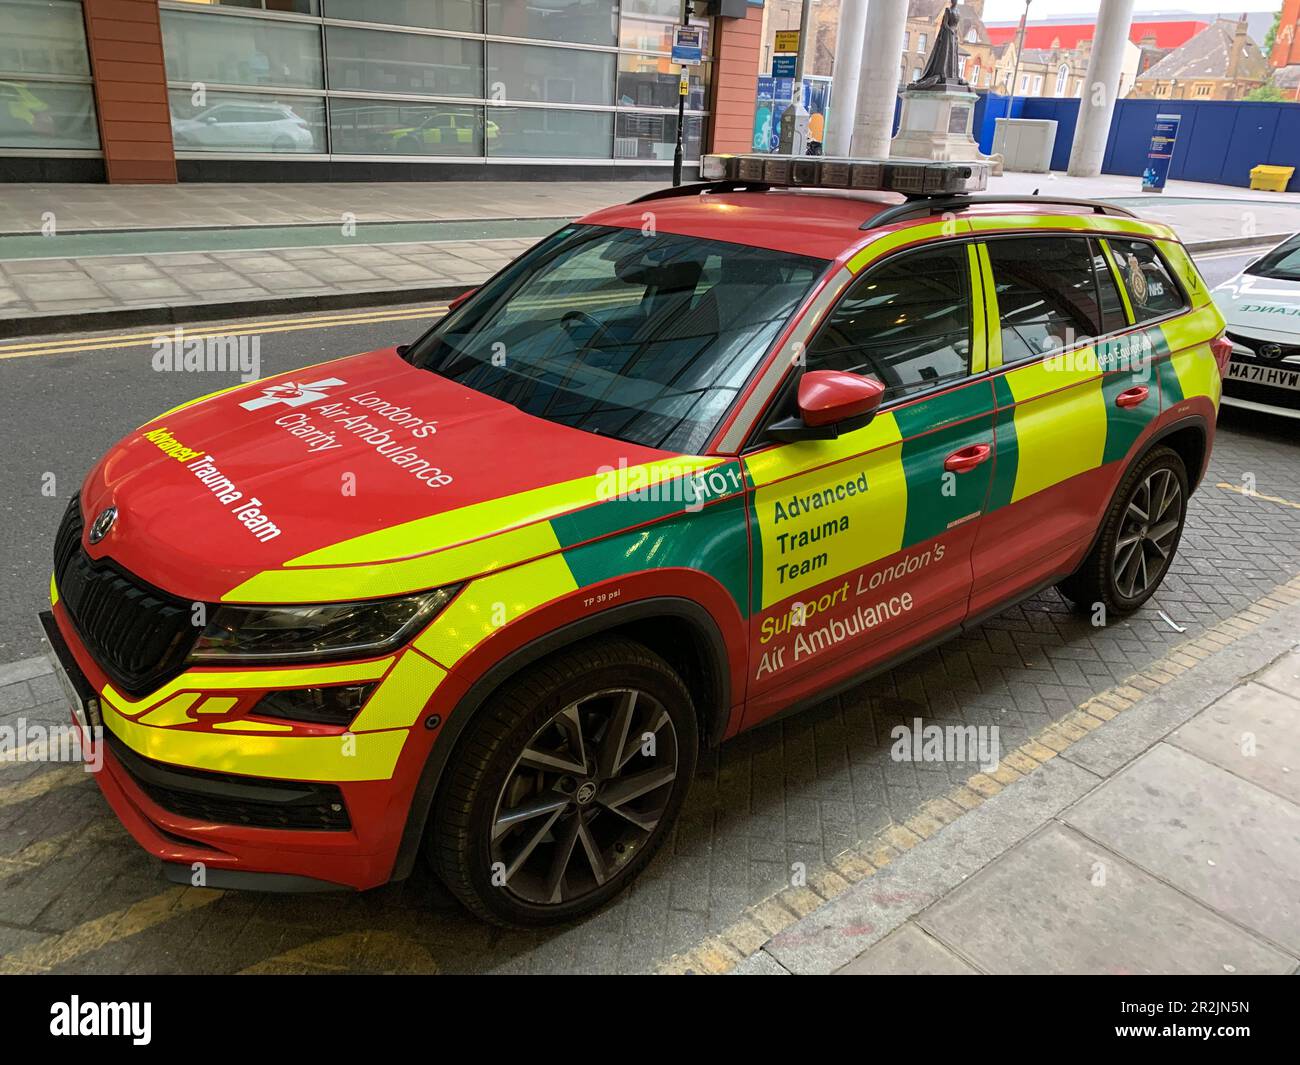 Équipe de traumatologie avancée véhicule de la Skoda Air Ambulance de Londres à l'hôpital Royal London, Whitechapel Banque D'Images